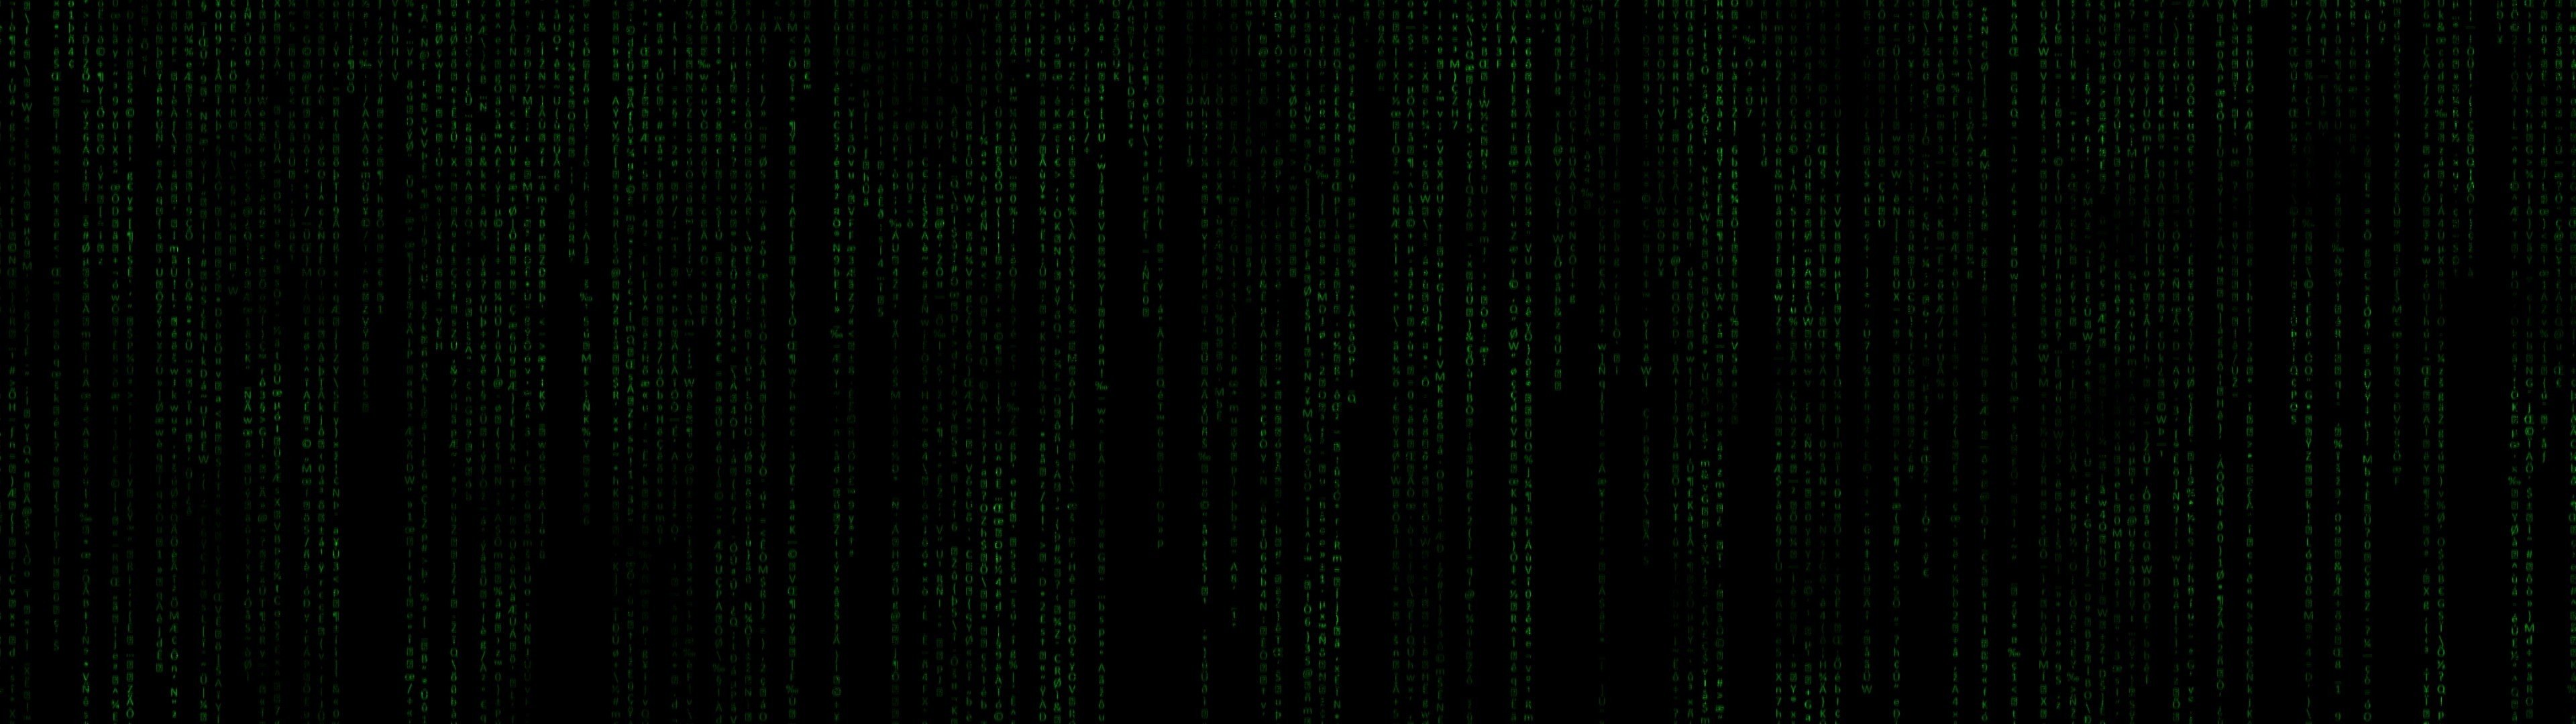 The Matrix Wallpaper